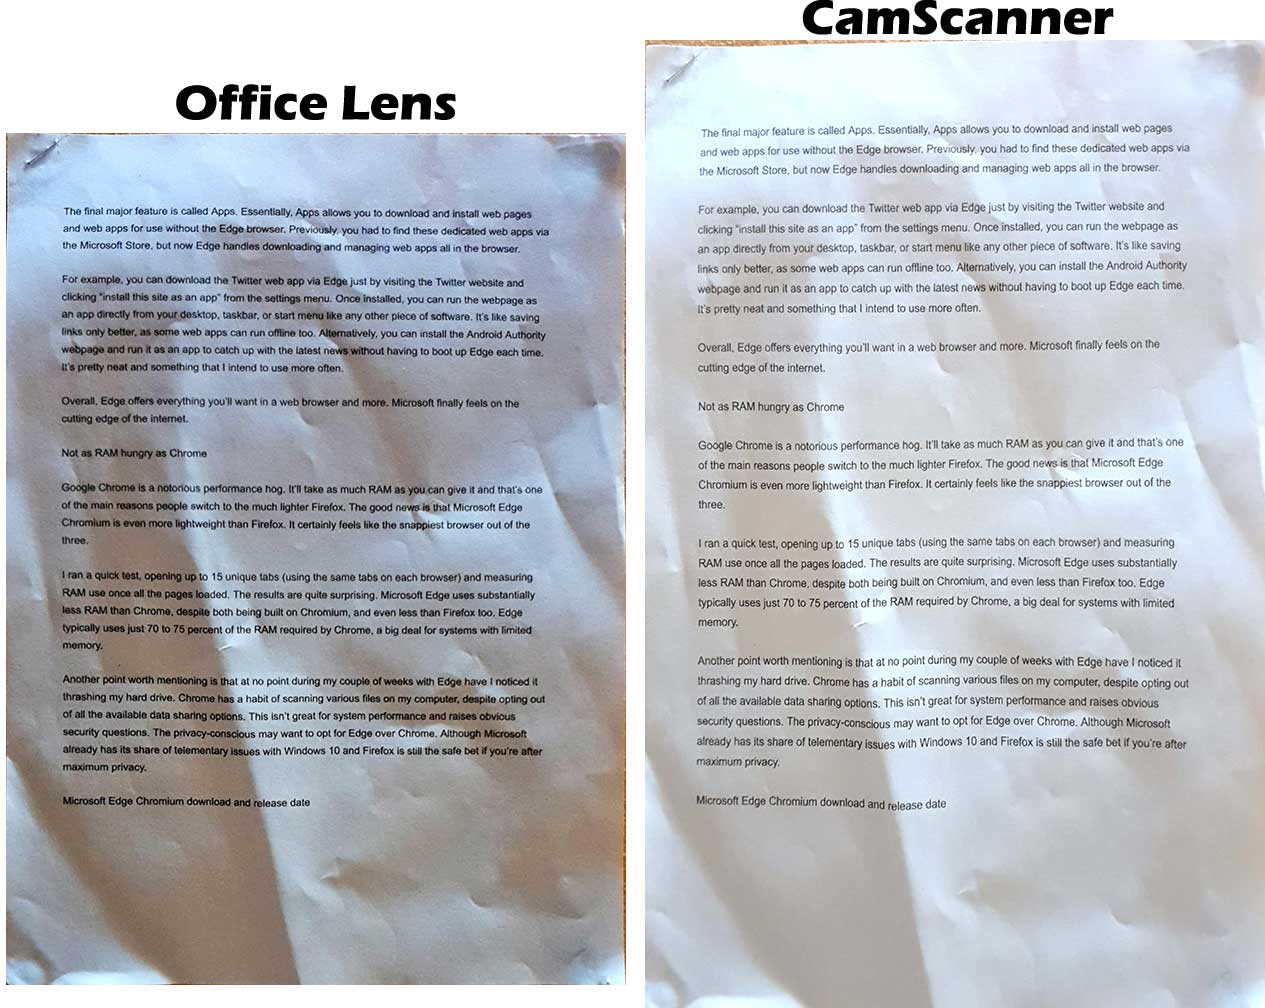 Camscanner Vs Microsoft Lens